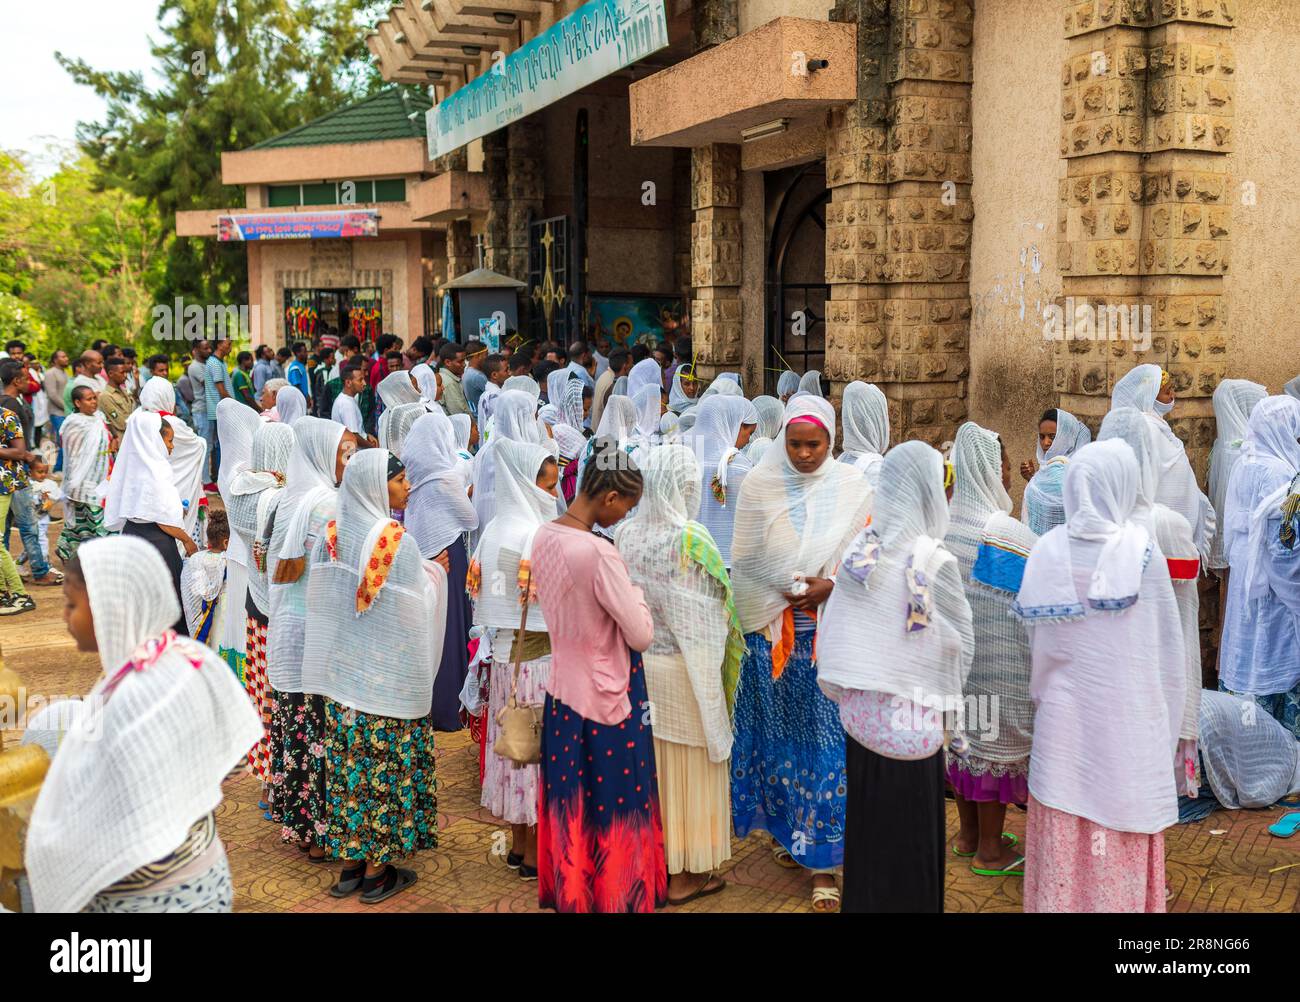 Bahir dar, Äthiopien - 21. April 2019: Ostern in Bahir dar feiern Menschen die Straßen, Frauen mit weißen Schals, die die Tradition widerspiegeln Stockfoto